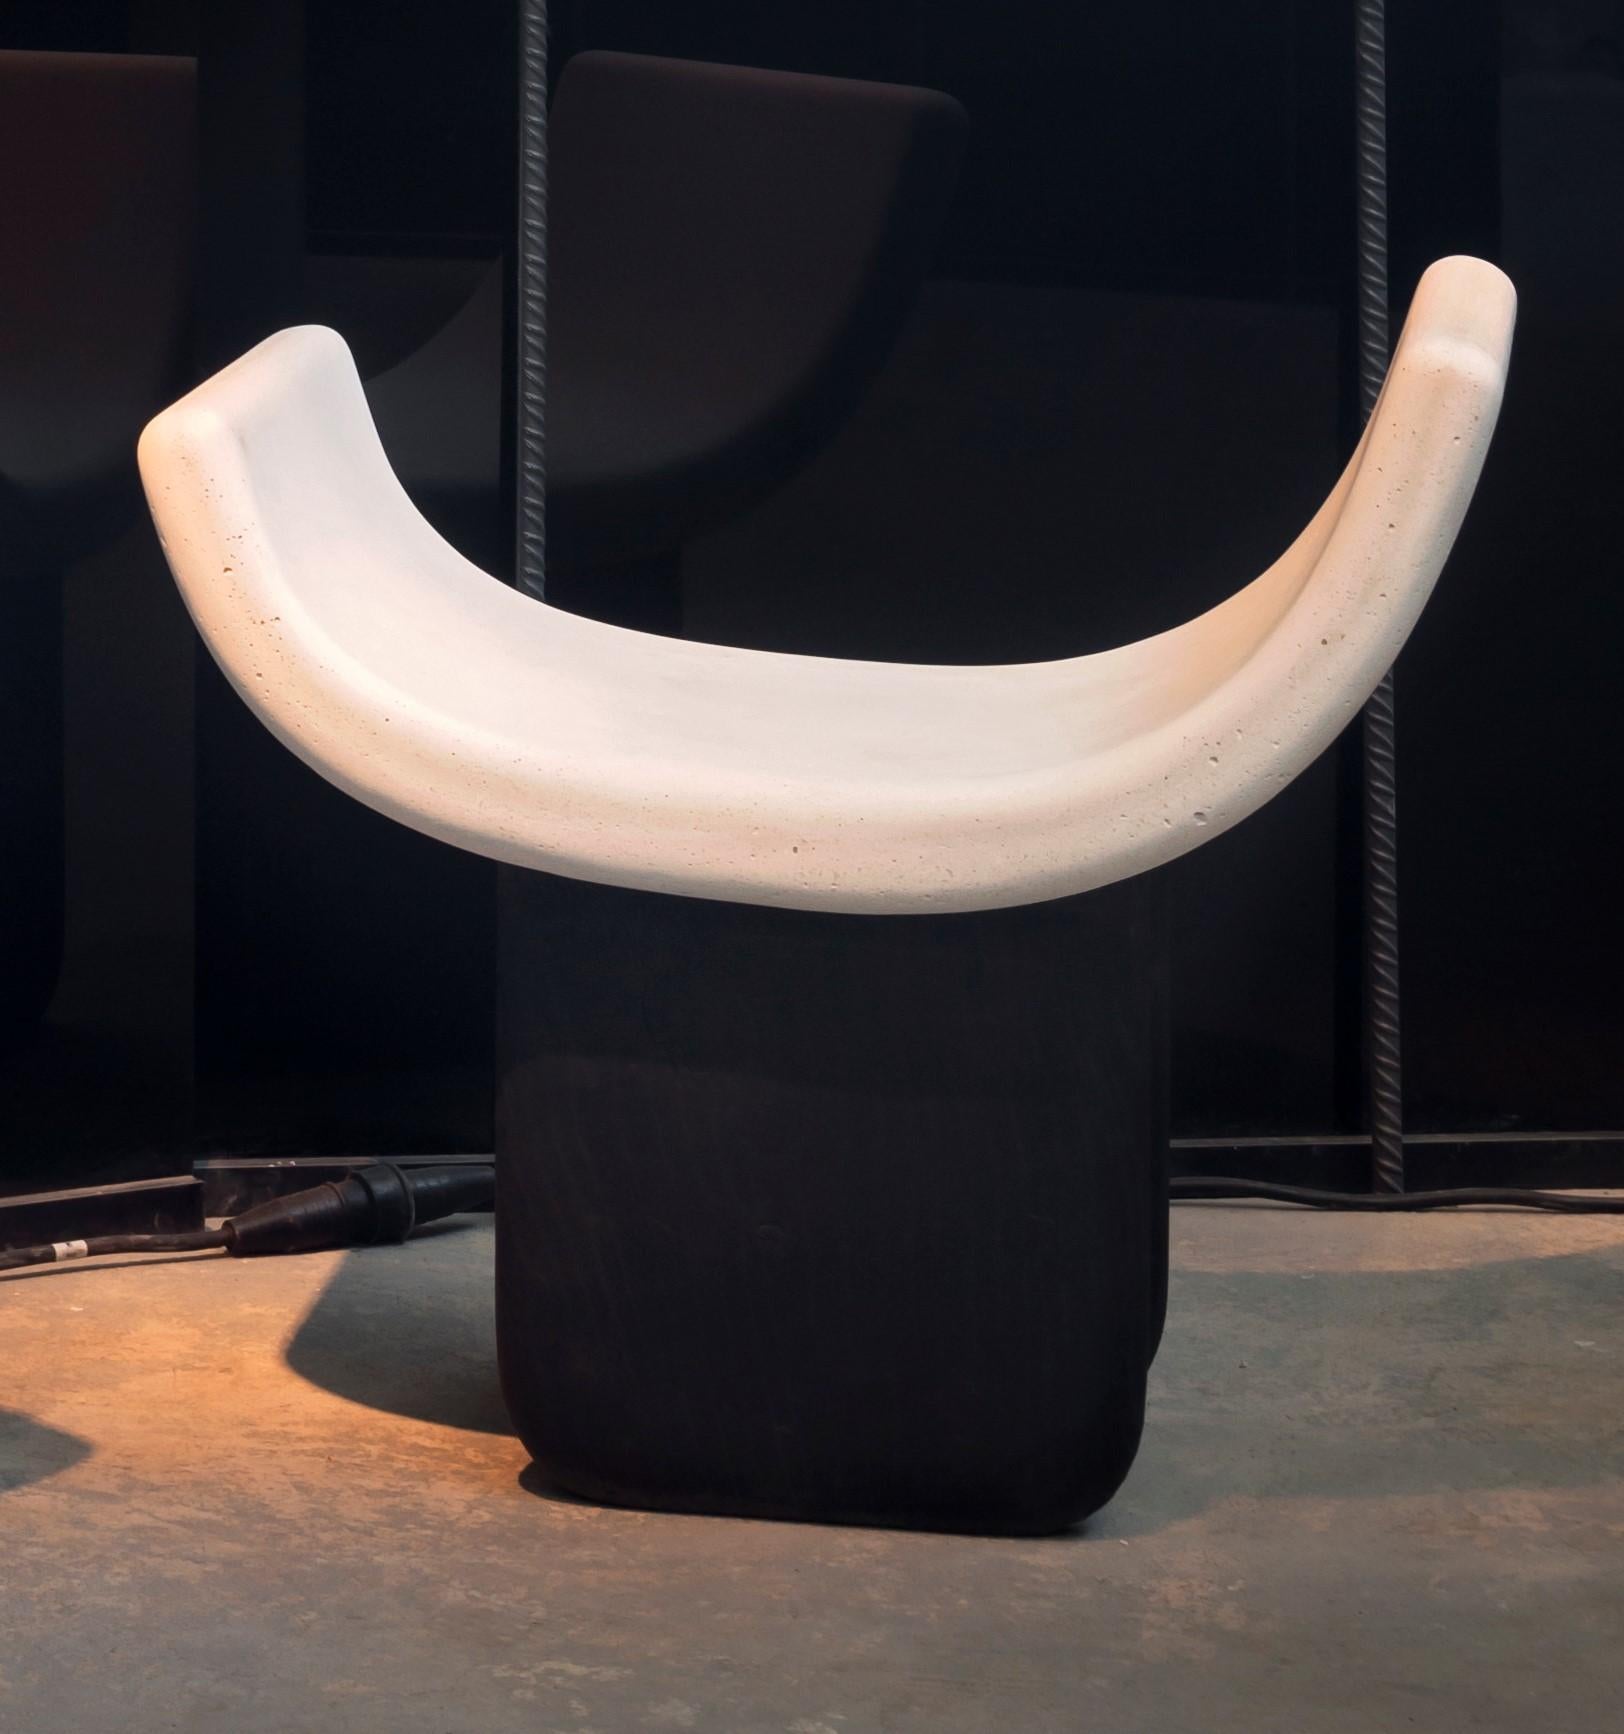 Monolithischer Stuhl 2 von Studiopepe
Abmessungen: B 80 x T 50 x H 76 cm
MATERIALIEN: Beton und Marmor.

Die vielseitige Designagentur Studiopepe wurde 2006 in Mailand gegründet. Eklektisch, modisch, es ist die
Das Unternehmen wurde von Chiara di